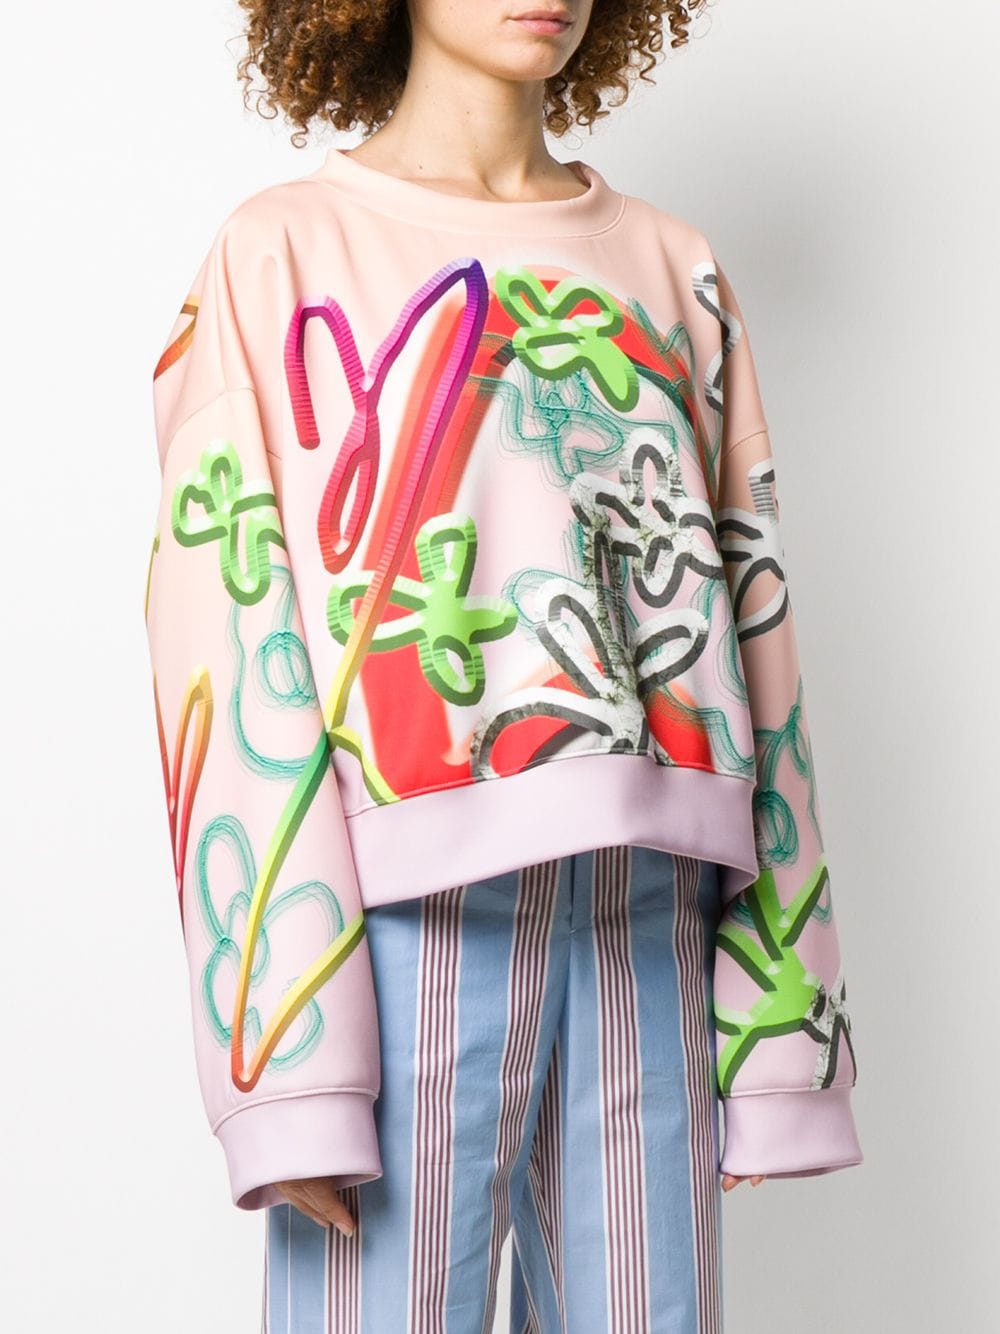 фото Maison margiela свитер с цветочным принтом